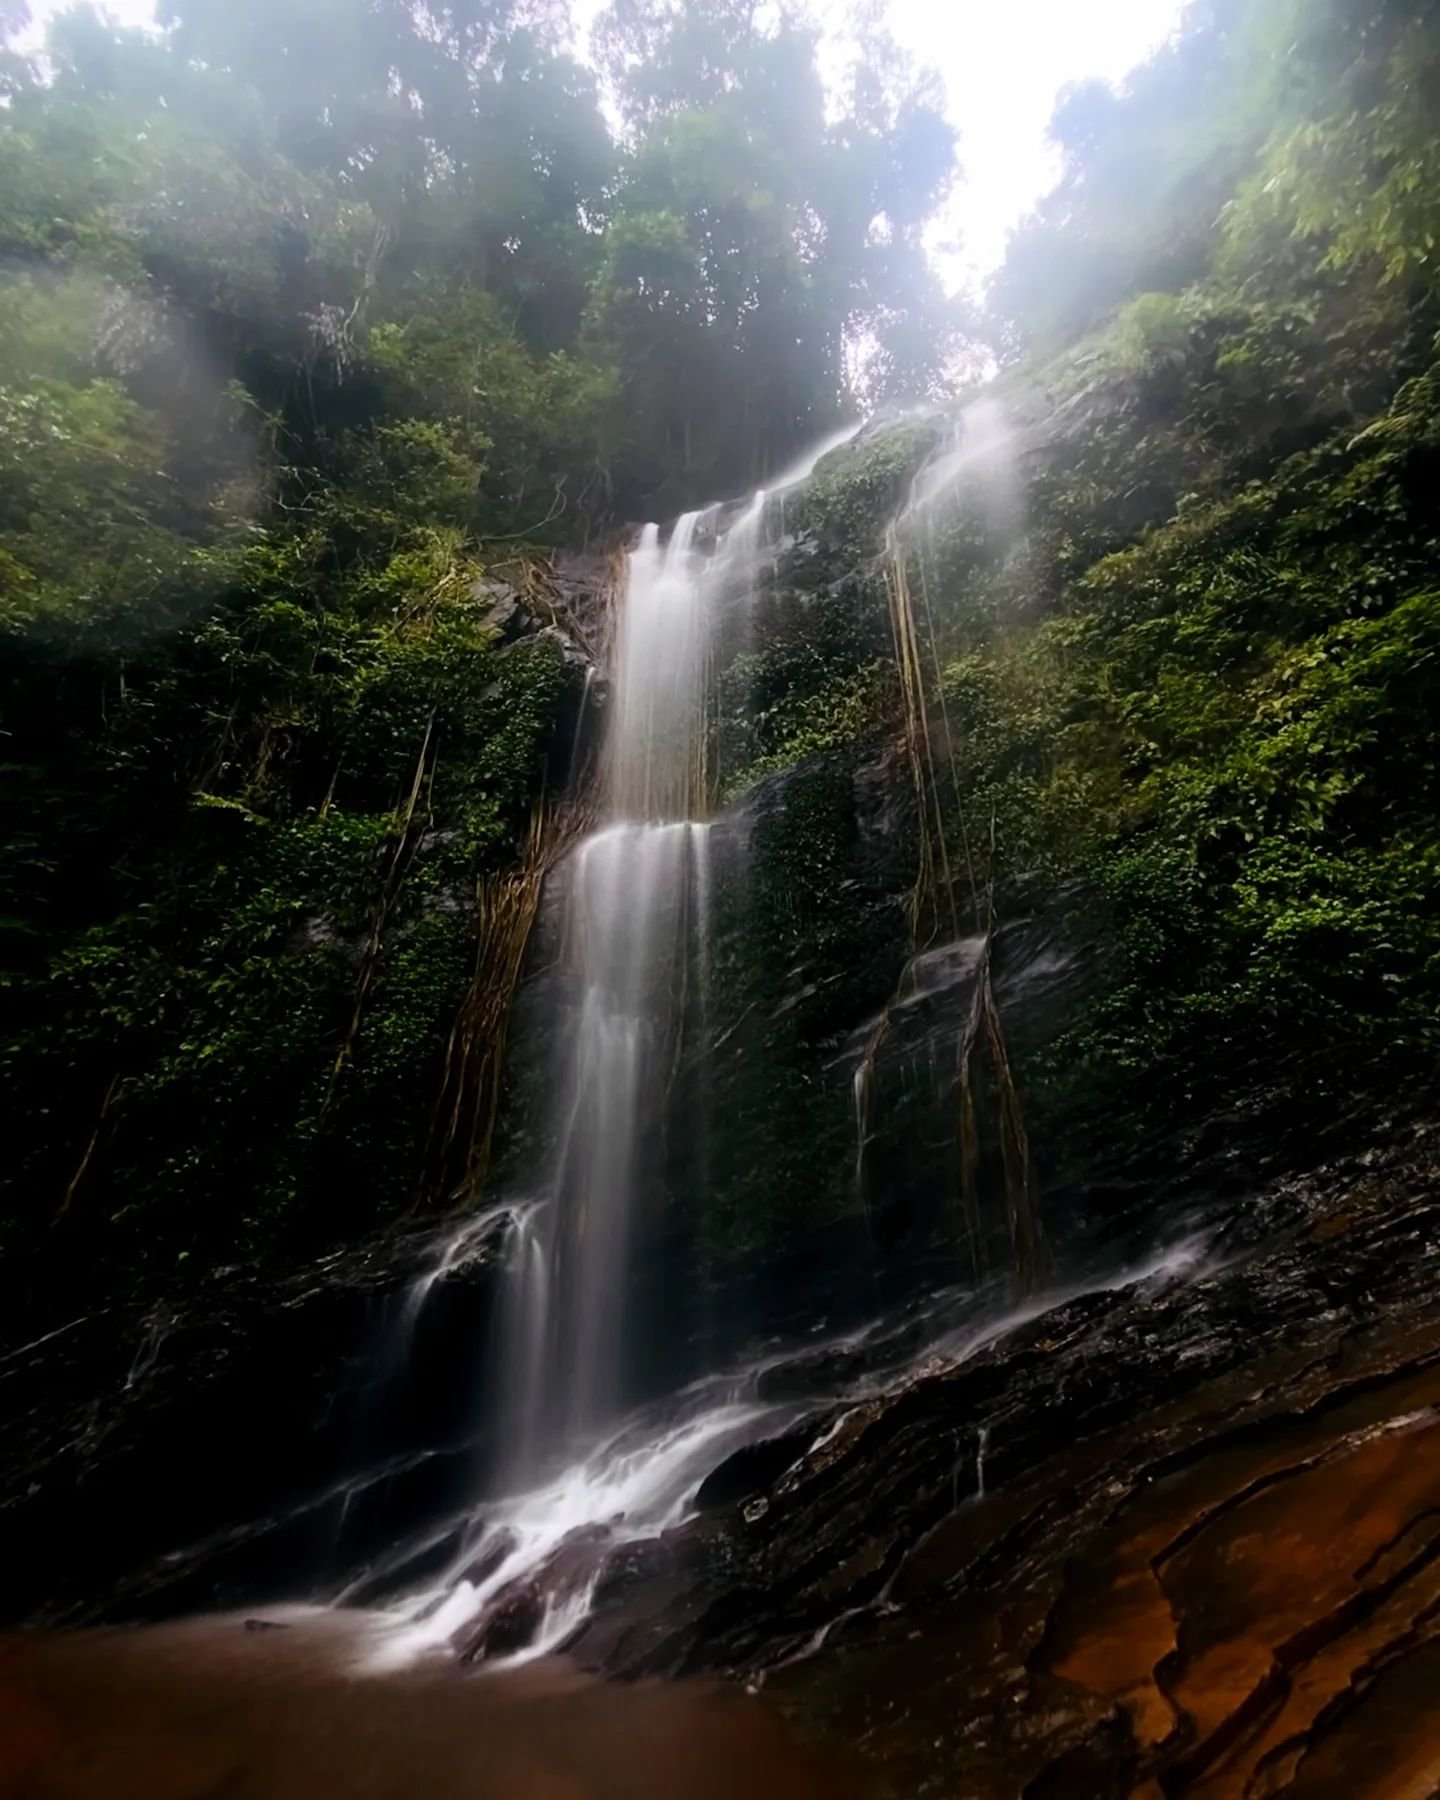 hidlumane falls, Shimoga Falls, Kodachadri